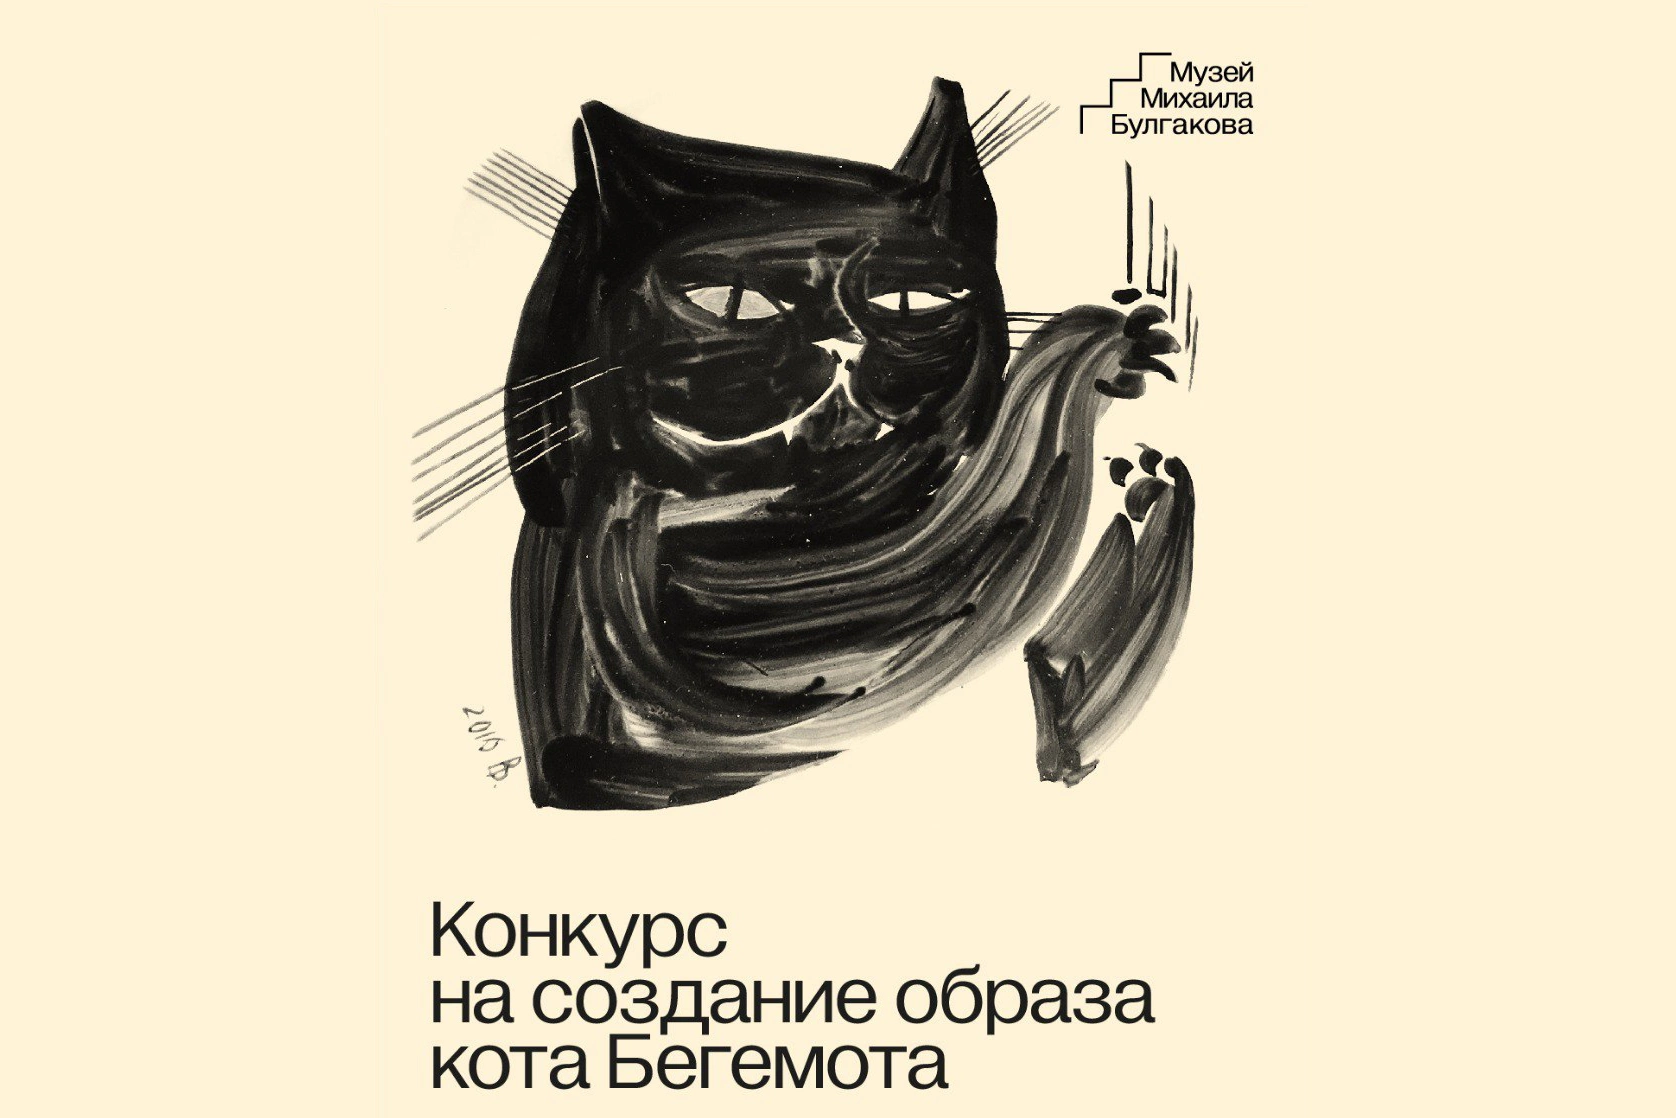 <p>Изображение кота Бегемота с декоративной тарелки из&nbsp;собрания музея Михаила Булгакова</p>